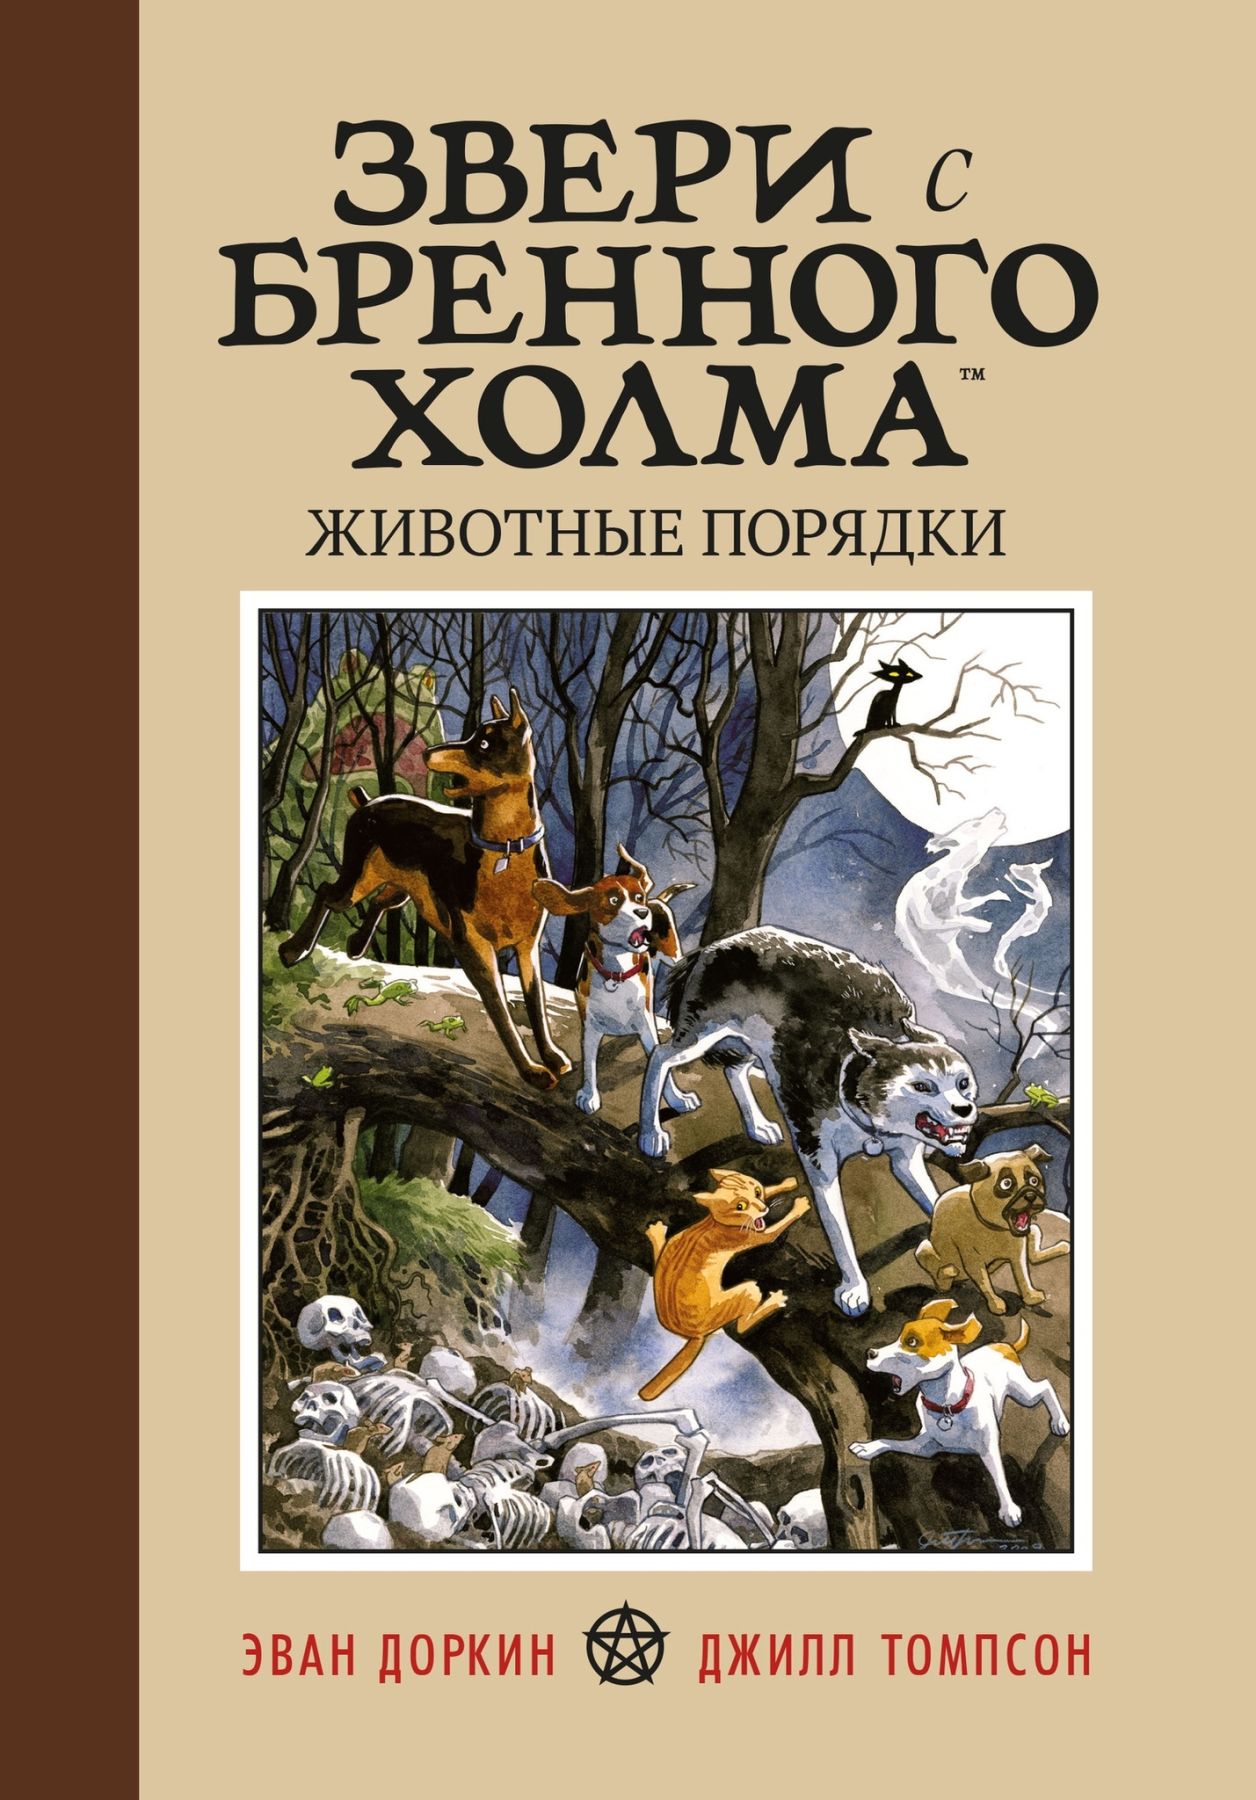 Комикс на русском языке «Звери с Бренного Холма. Животные порядки»